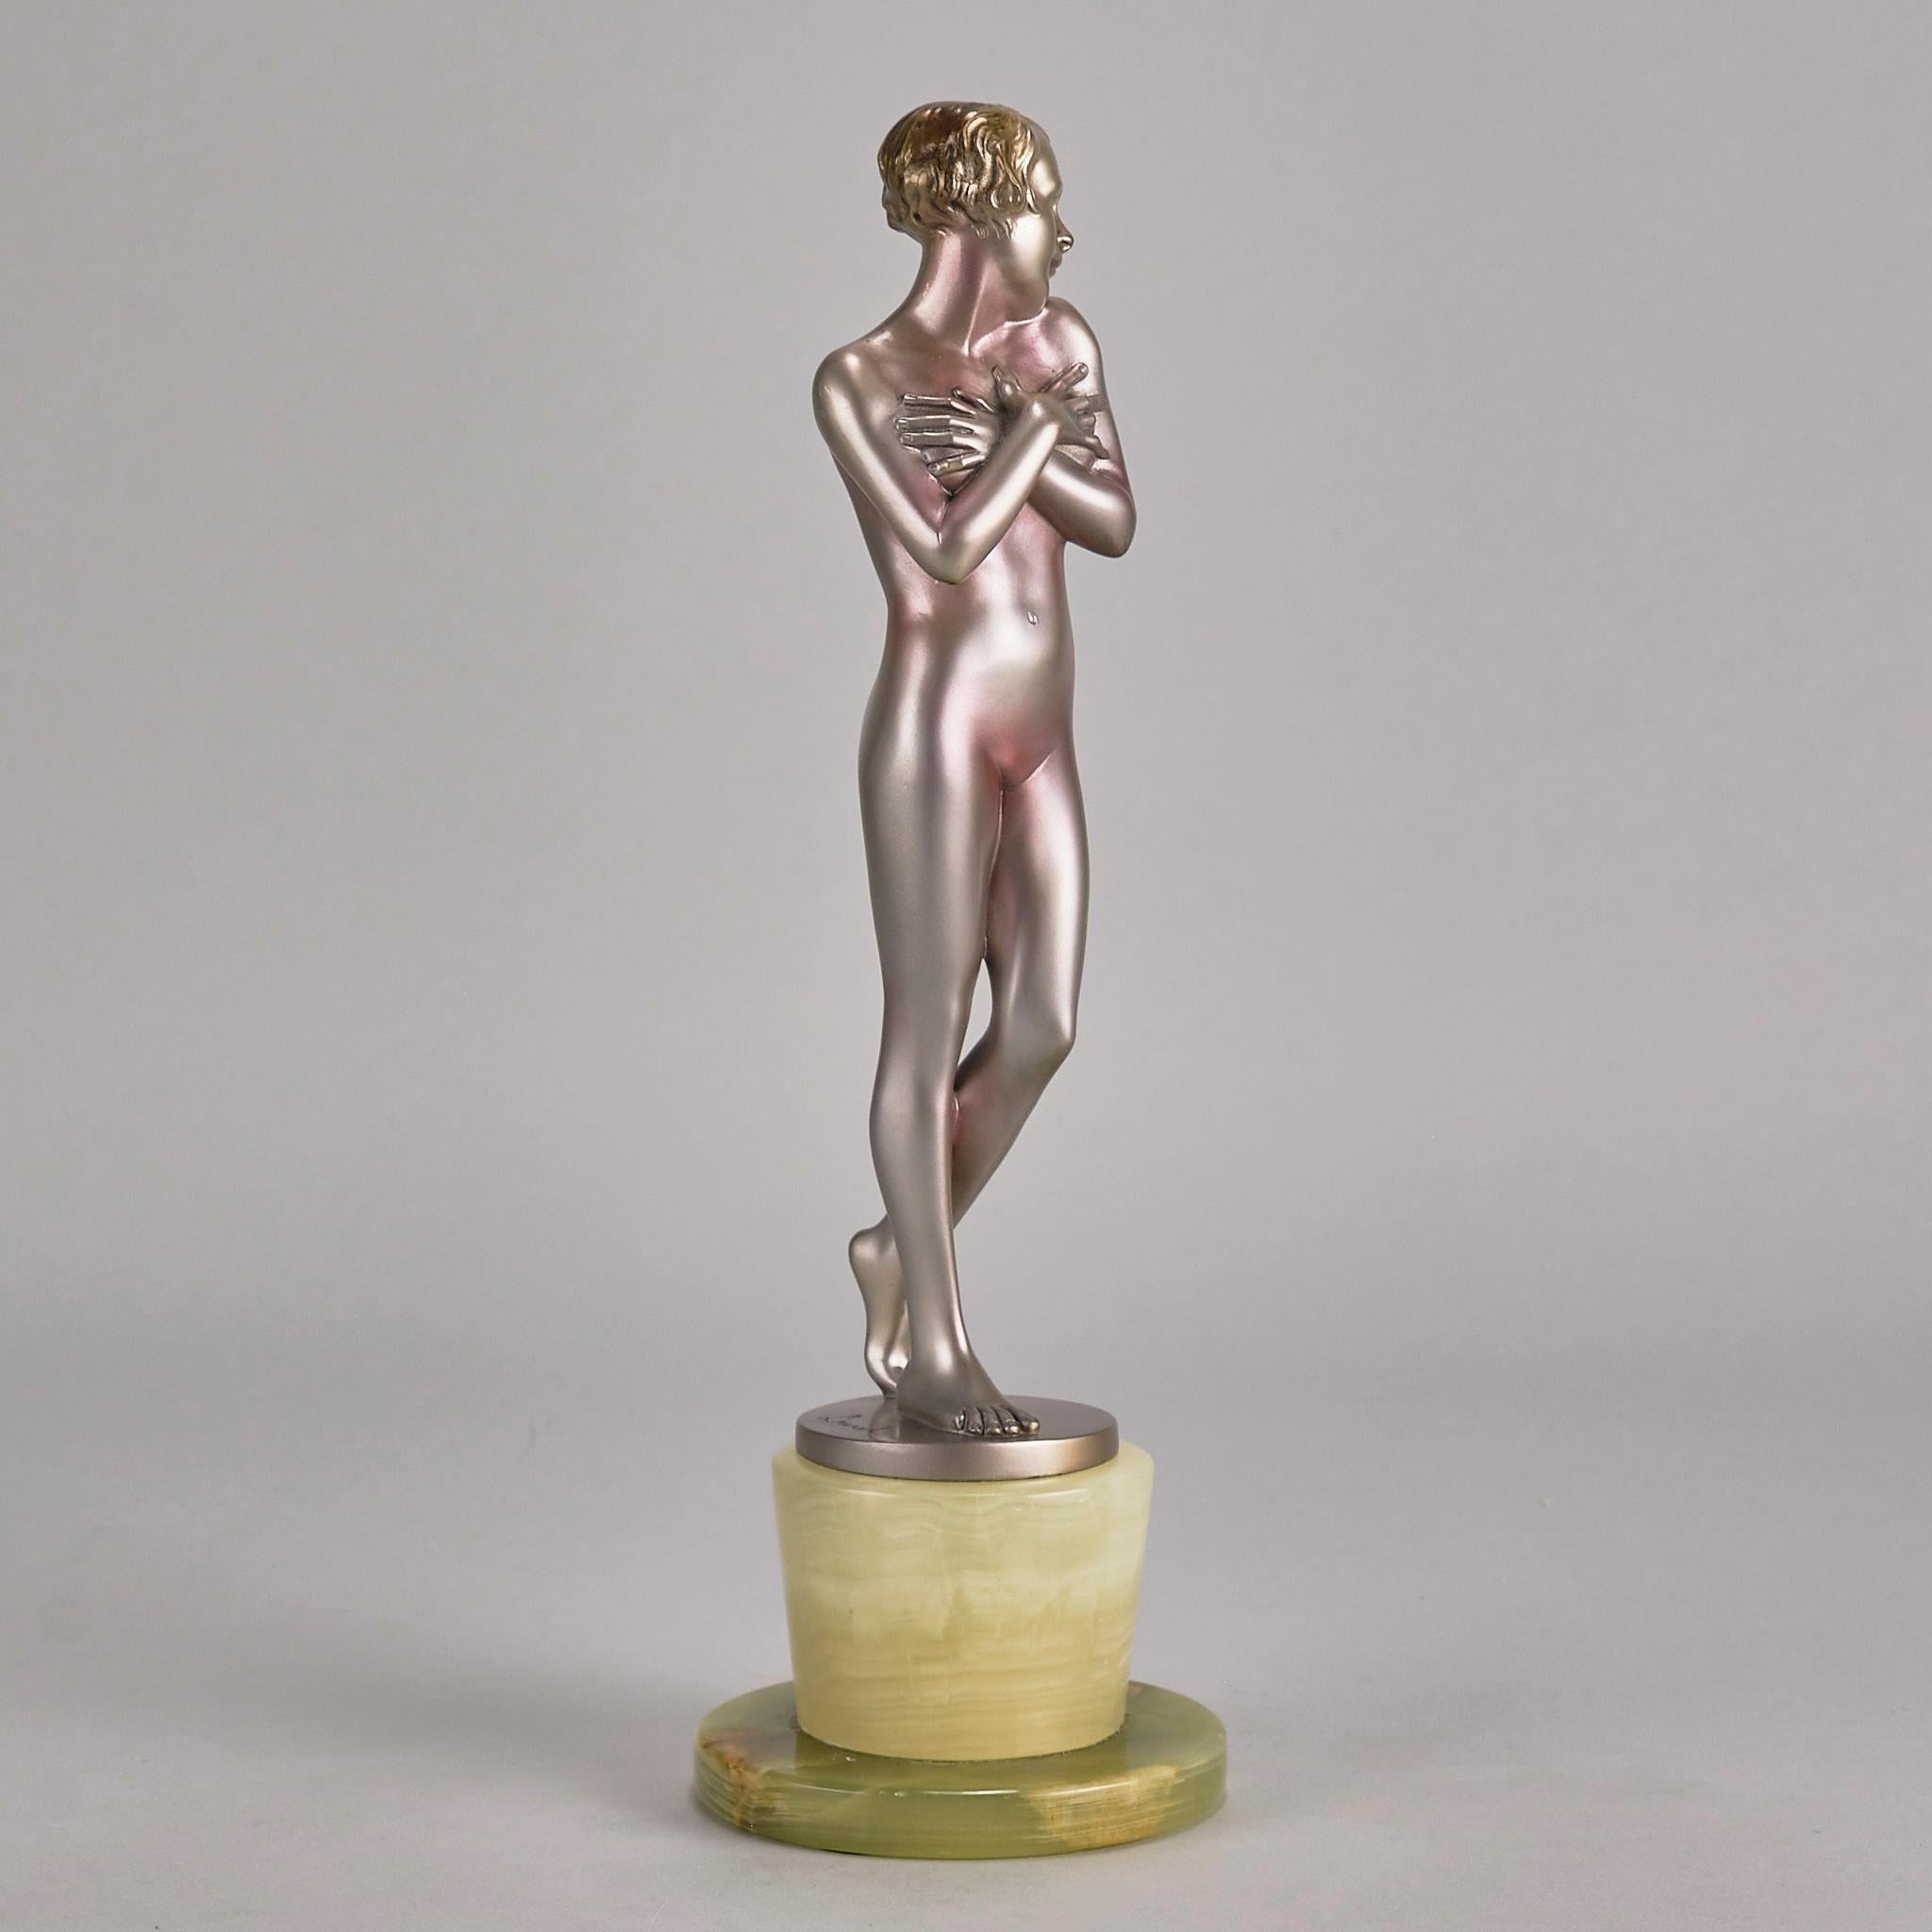 Bronzeskulptur mit dem Titel „Coy Girl“ von Josef Lorenzl aus dem frühen 20. Jahrhundert (Österreichisch) im Angebot